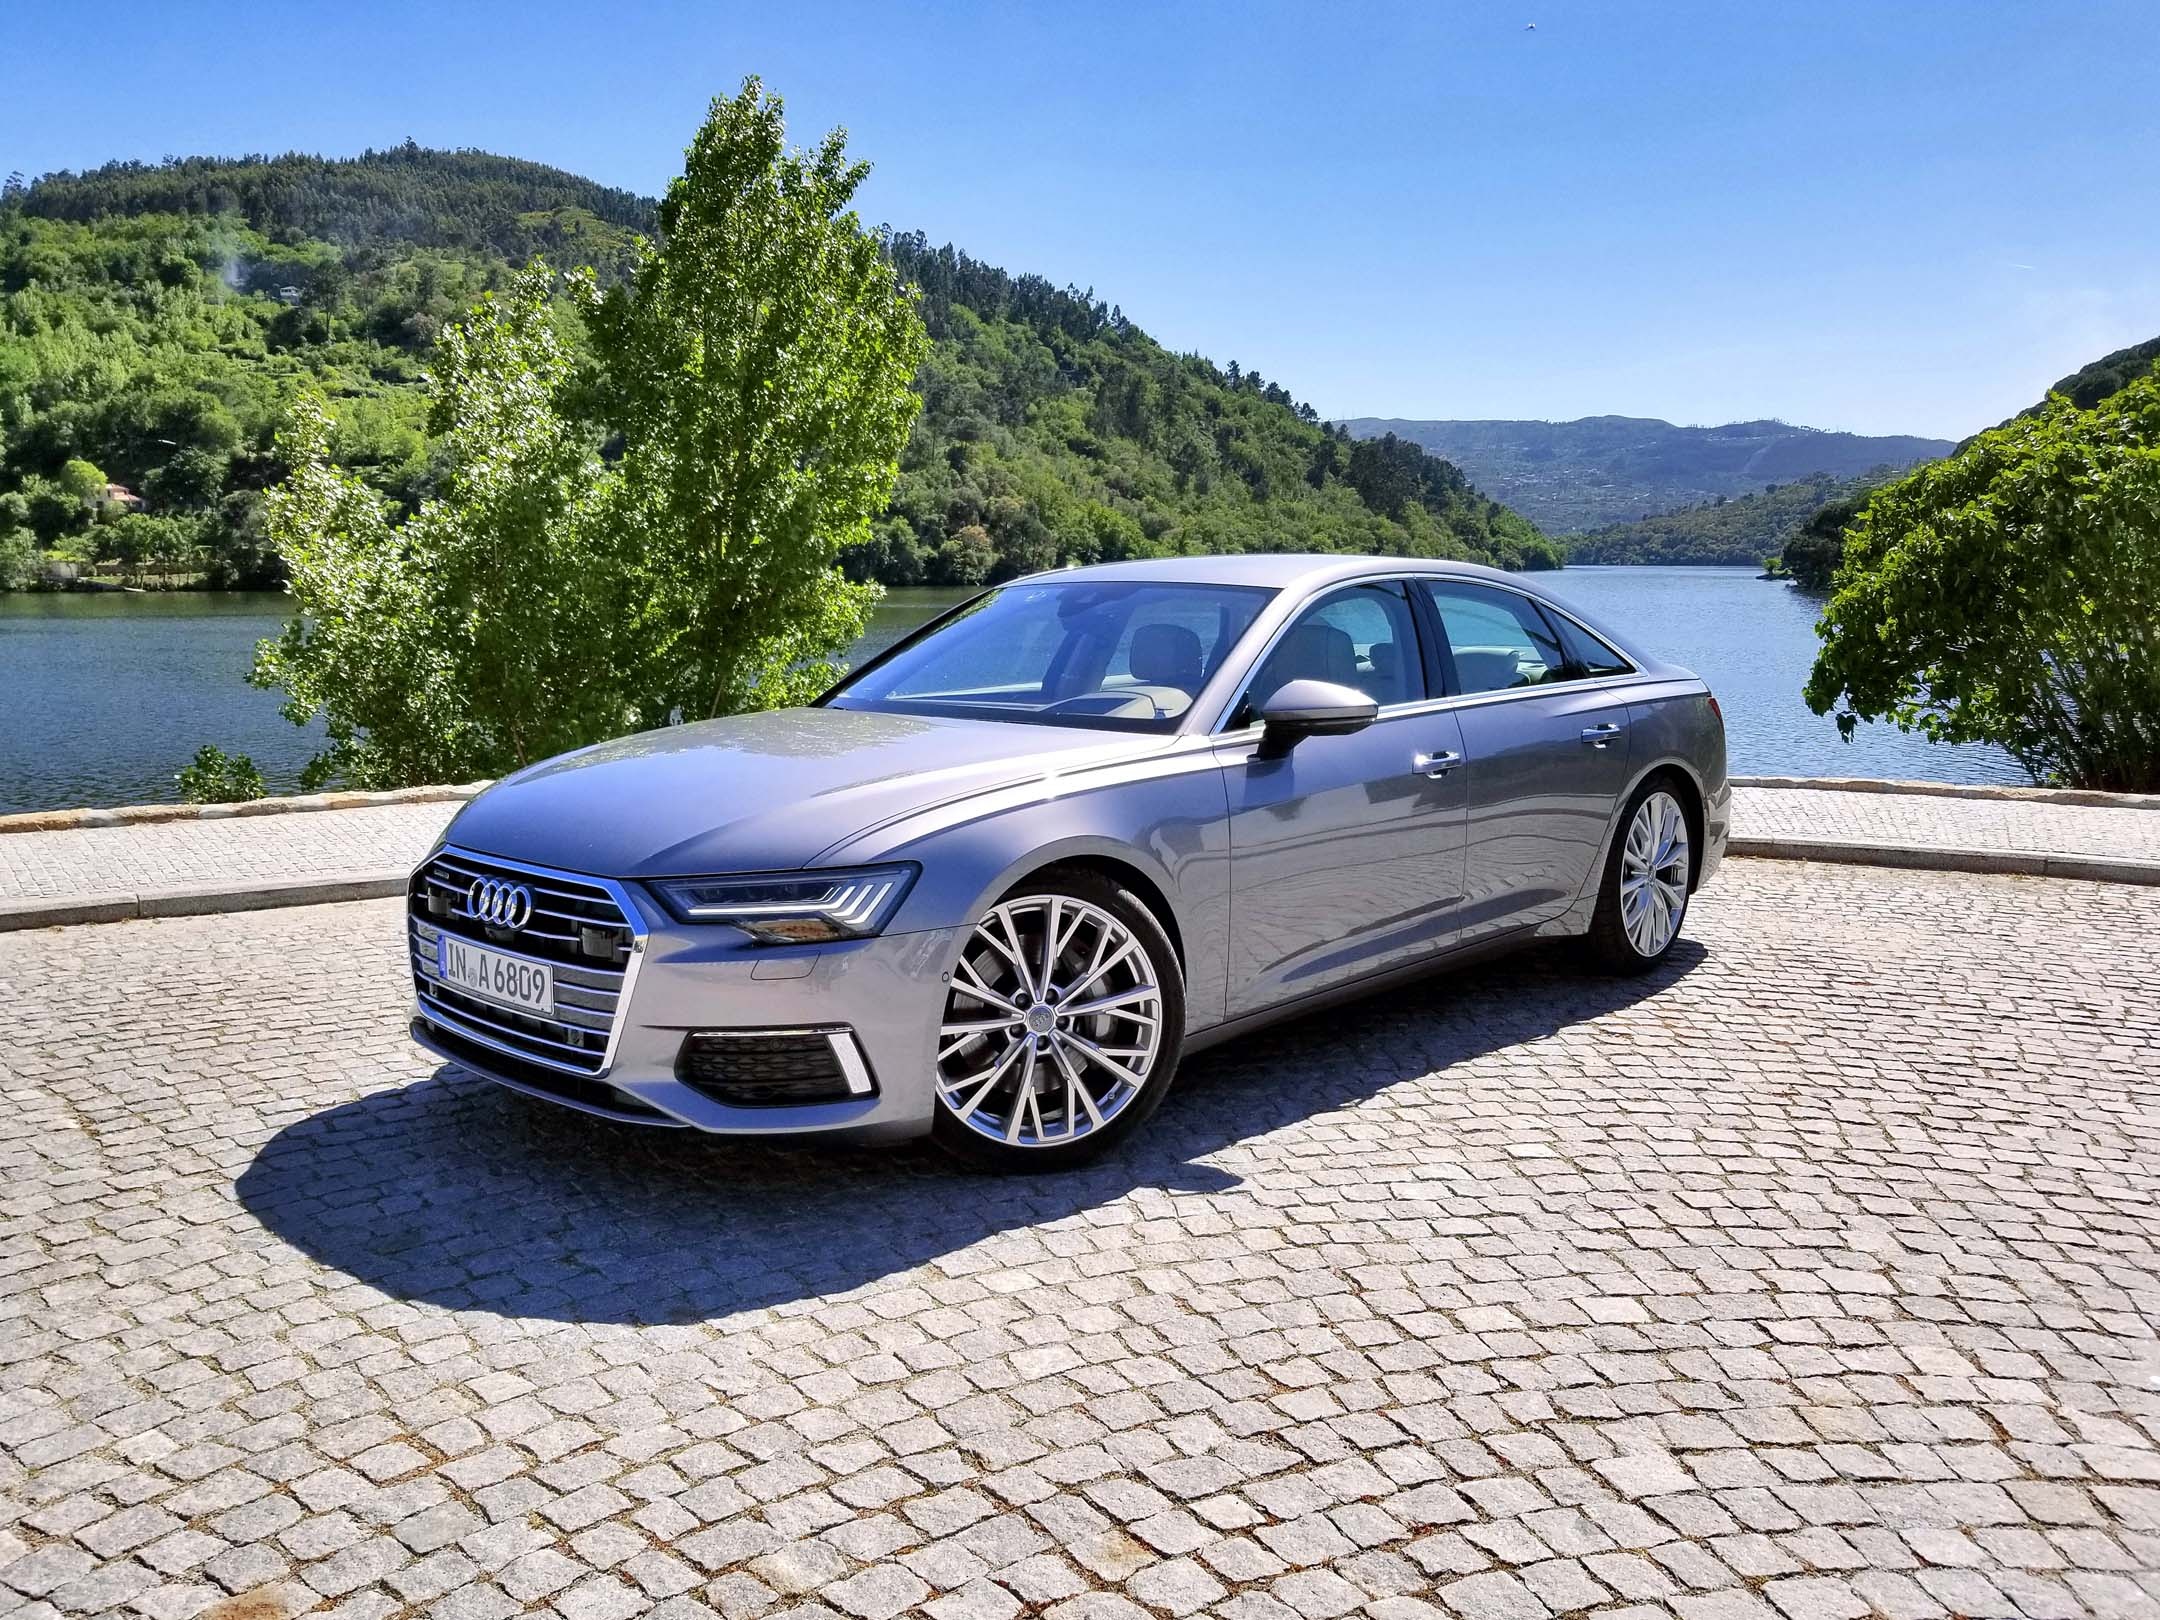 Audi A6, First drive review, Expert reviews, 2160x1620 HD Desktop